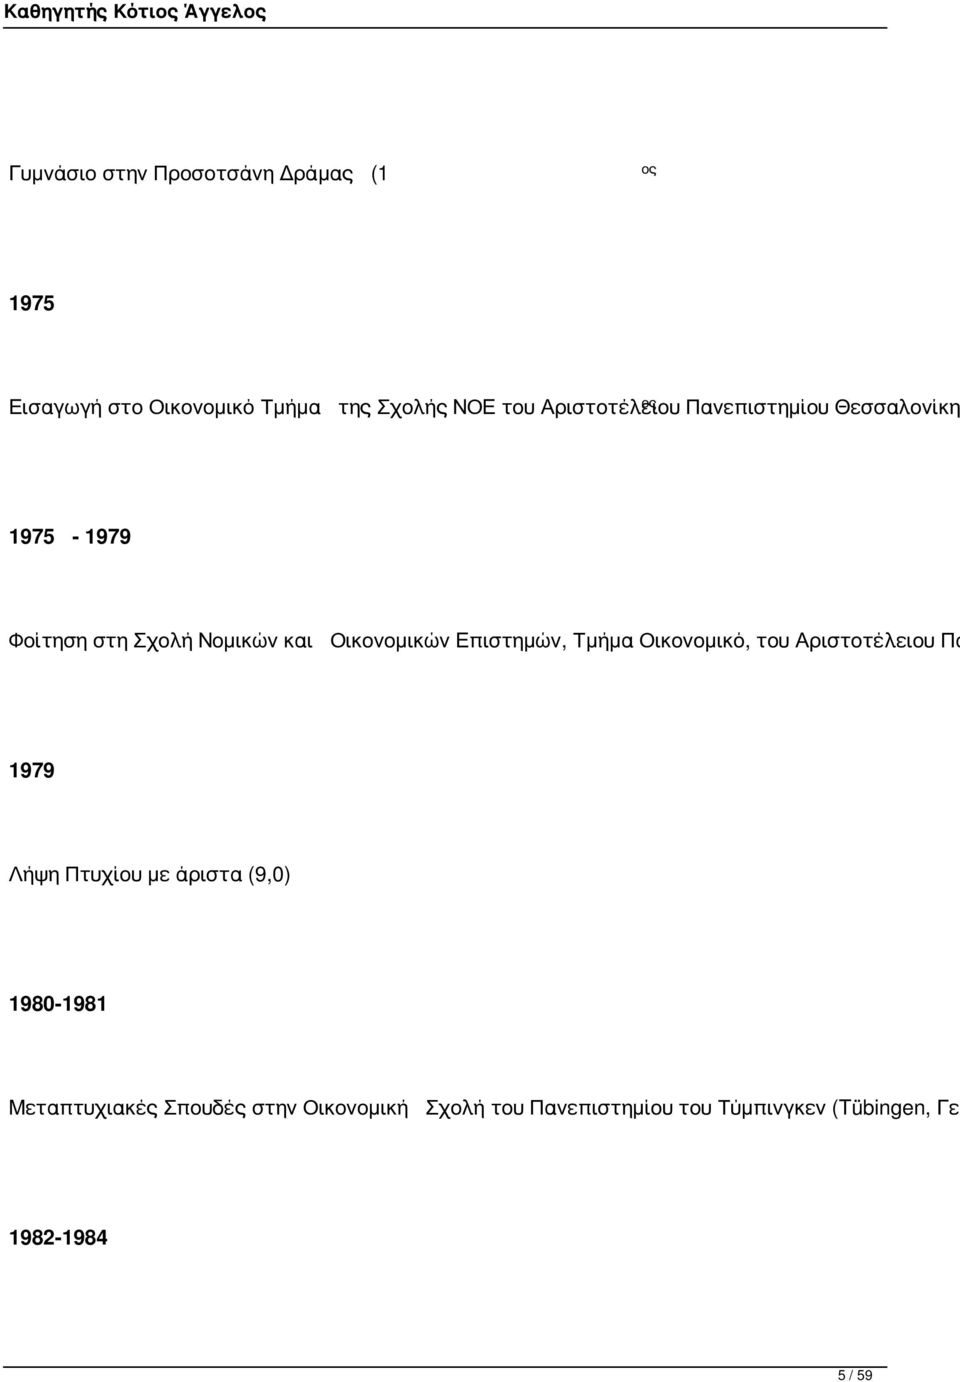 Επιστημών, Τμήμα Οικονομικό, του Αριστοτέλειου Πα 1979 Λήψη Πτυχίου με άριστα (9,0) 1980-1981